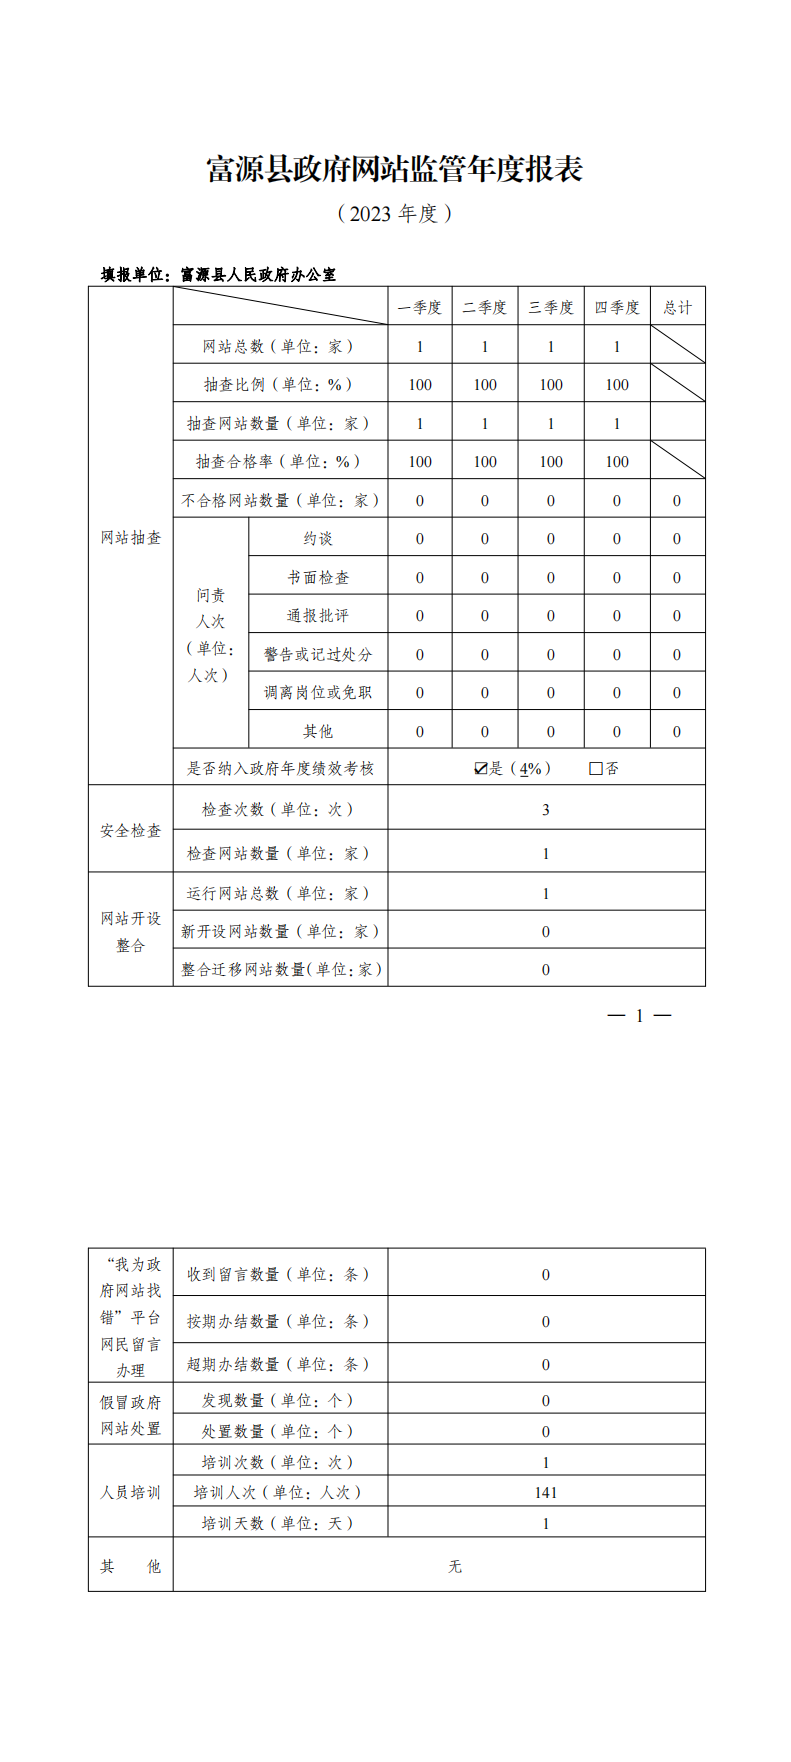 富源县2023年度政府网站监管年度报表_00.png